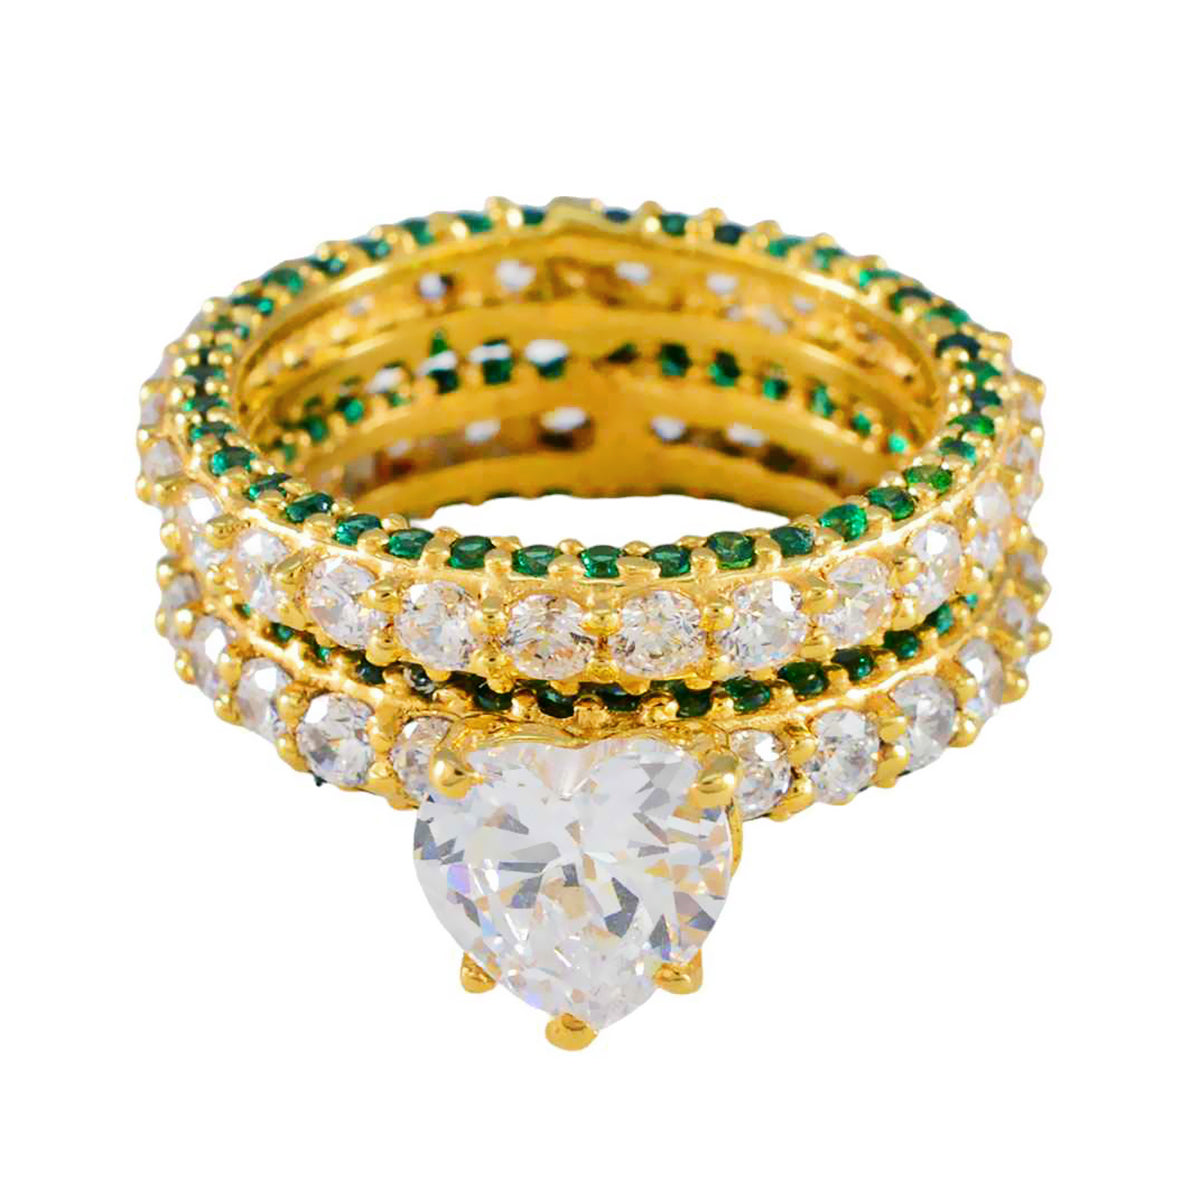 Riyo en quantité bague en argent avec placage en or jaune émeraude cz pierre coeur forme broche réglage bijoux de mode bague de pâques